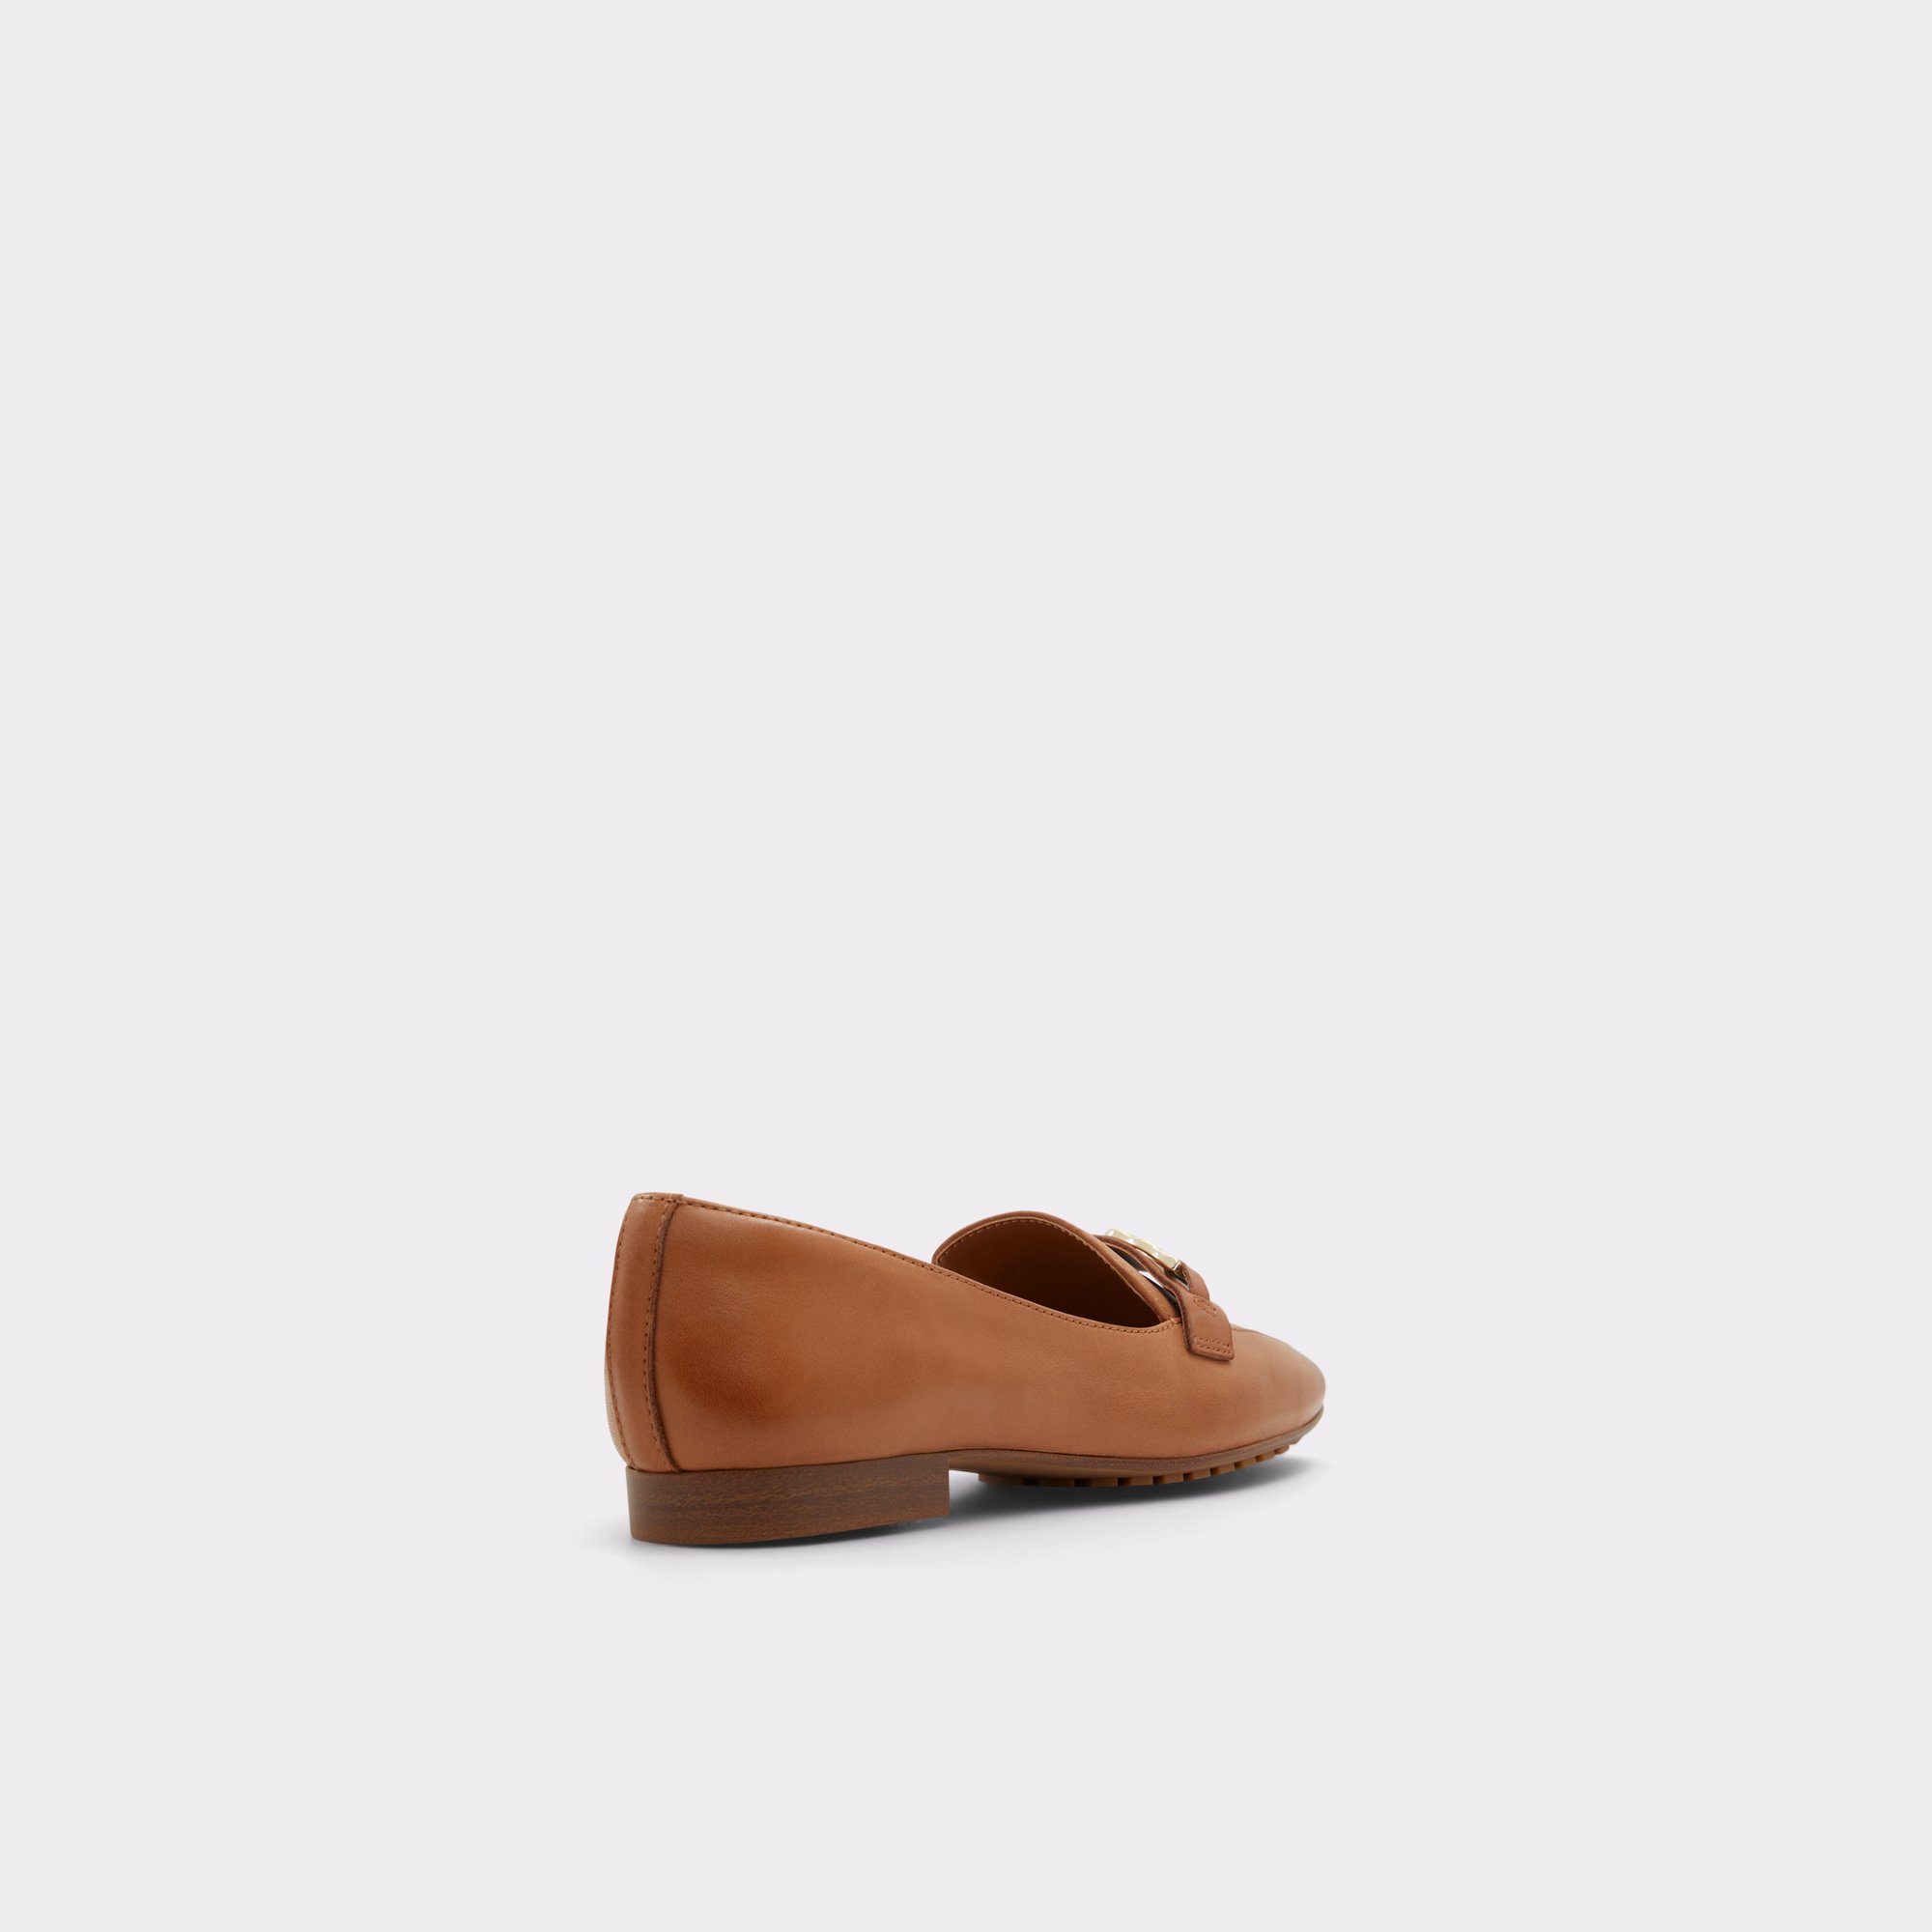 Cadoder Dark Beige Women's Loafers & Oxfords | ALDO US